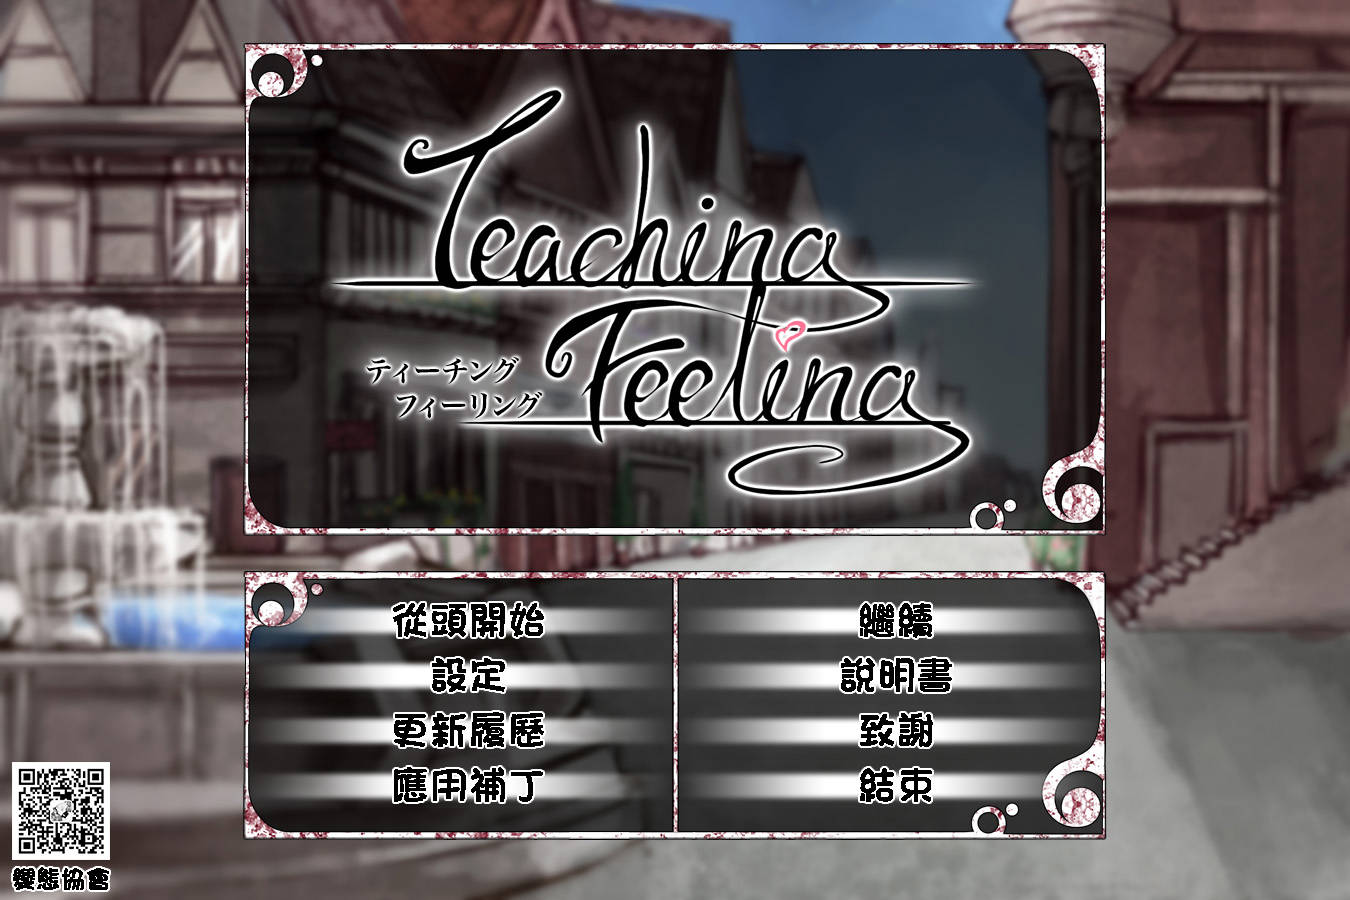 【游戏】希尔薇 teachingfeeling 3.0 魔改汉化版